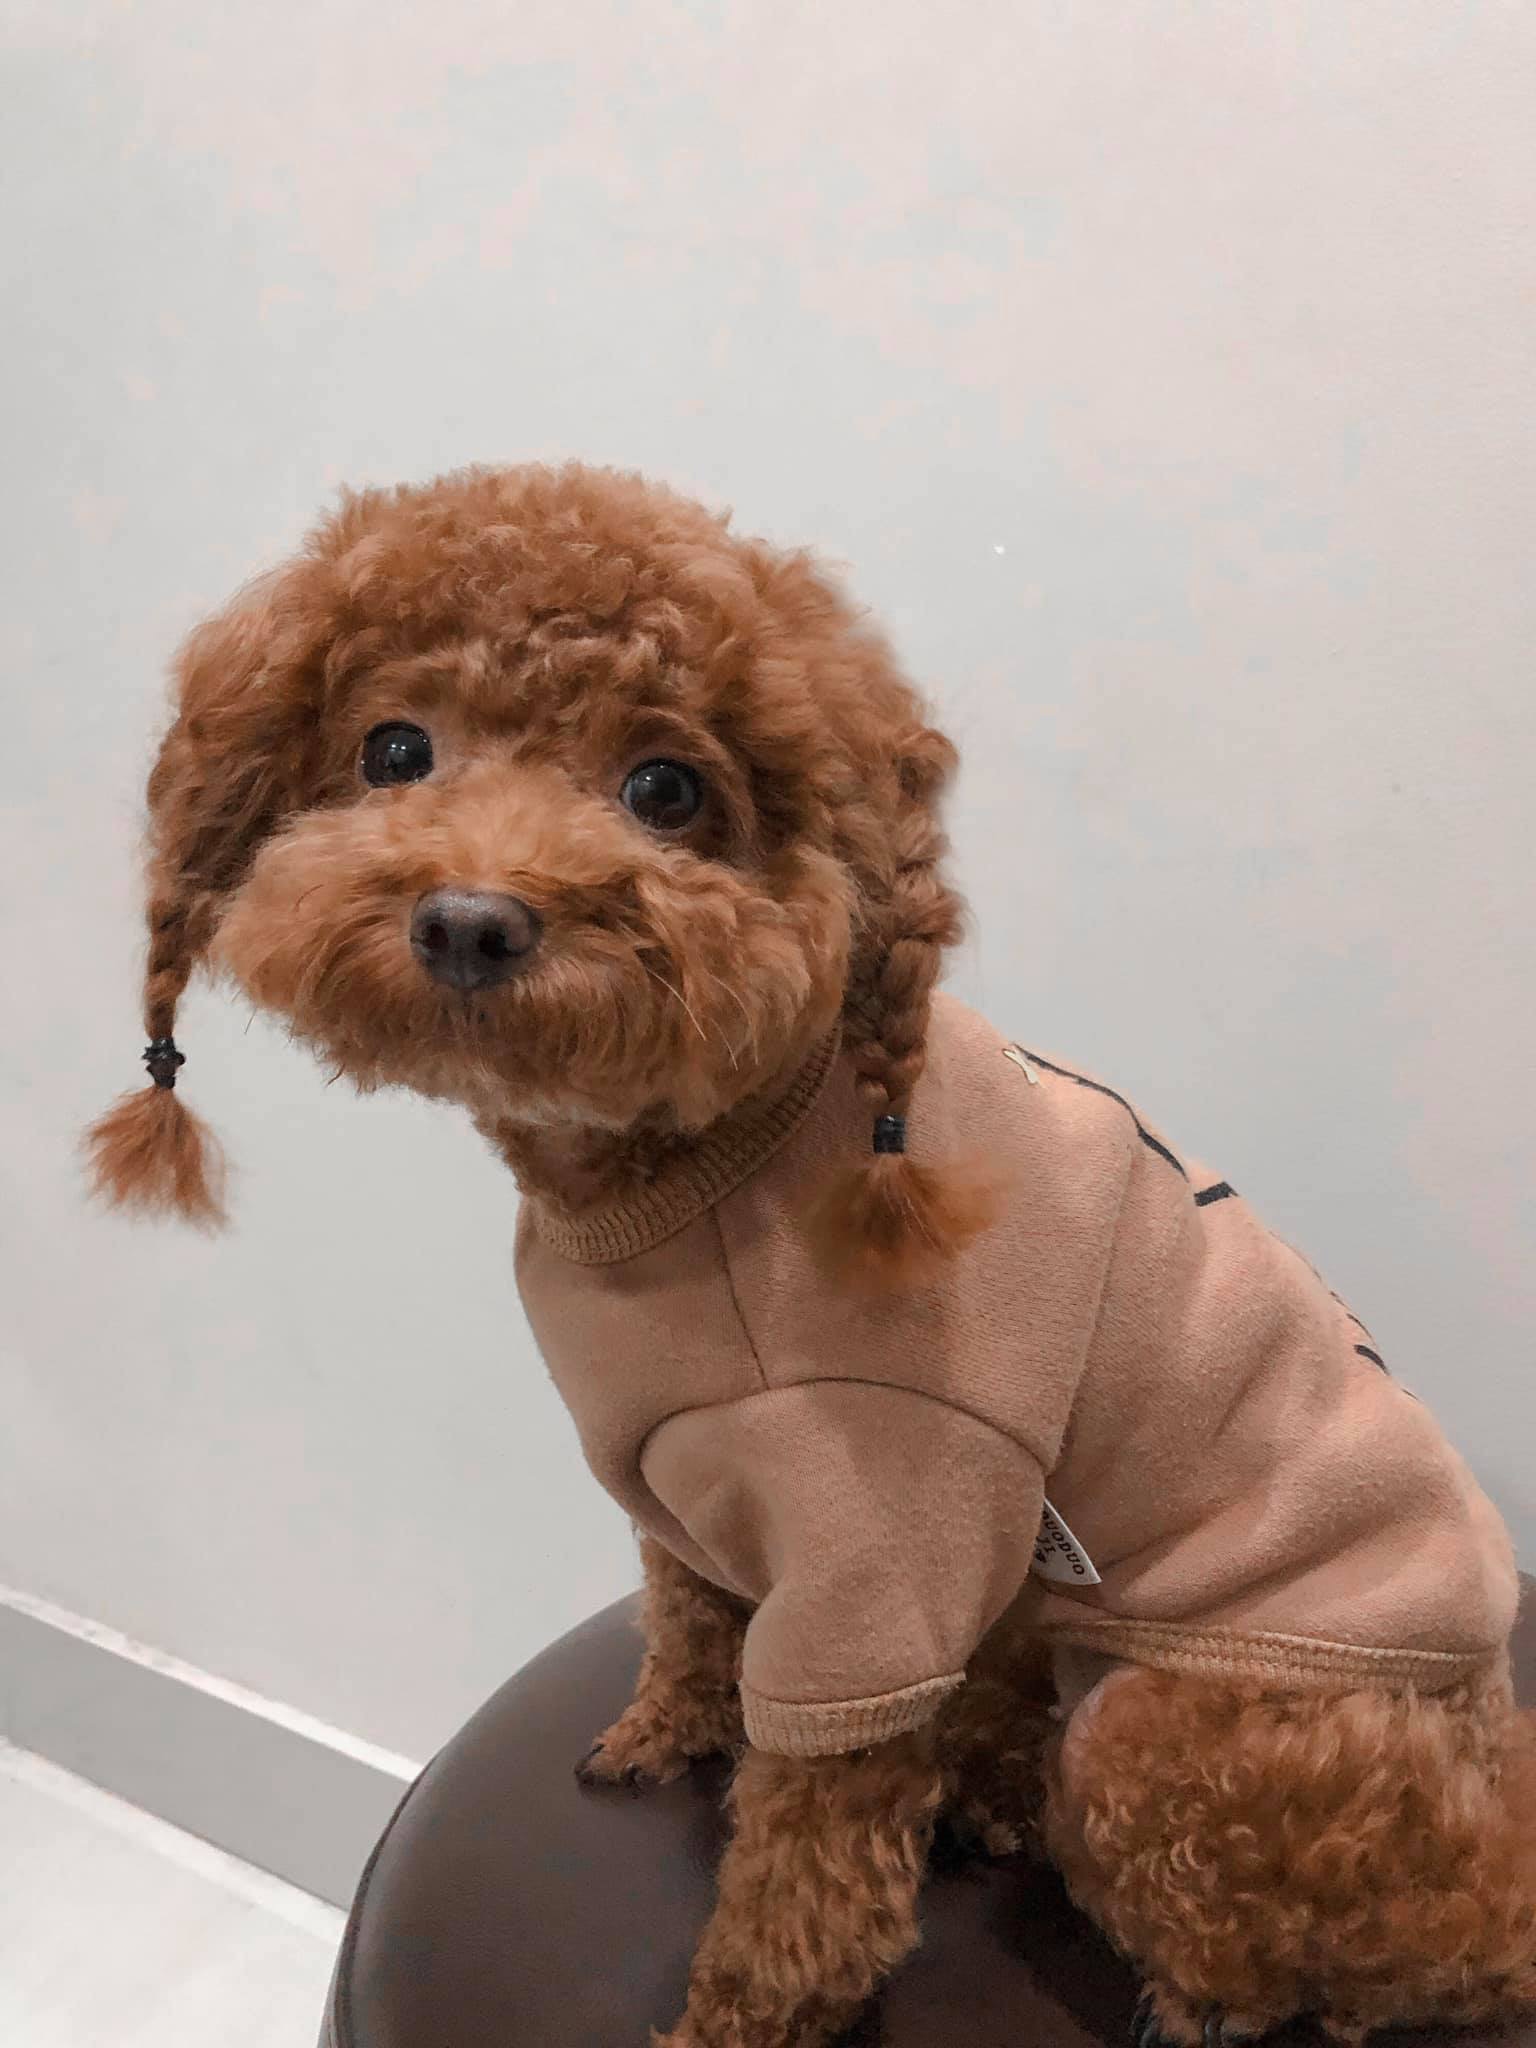 Stylist chó Poodle: Bạn muốn chú chó bạn trông đẹp và đáng yêu? Chỉ cần tìm kiếm stylist chó Poodle, các chuyên gia sẽ giúp trang trí cho chú chó của bạn trở nên lộng lẫy và tuyệt vời với bộ lông sáng bóng.